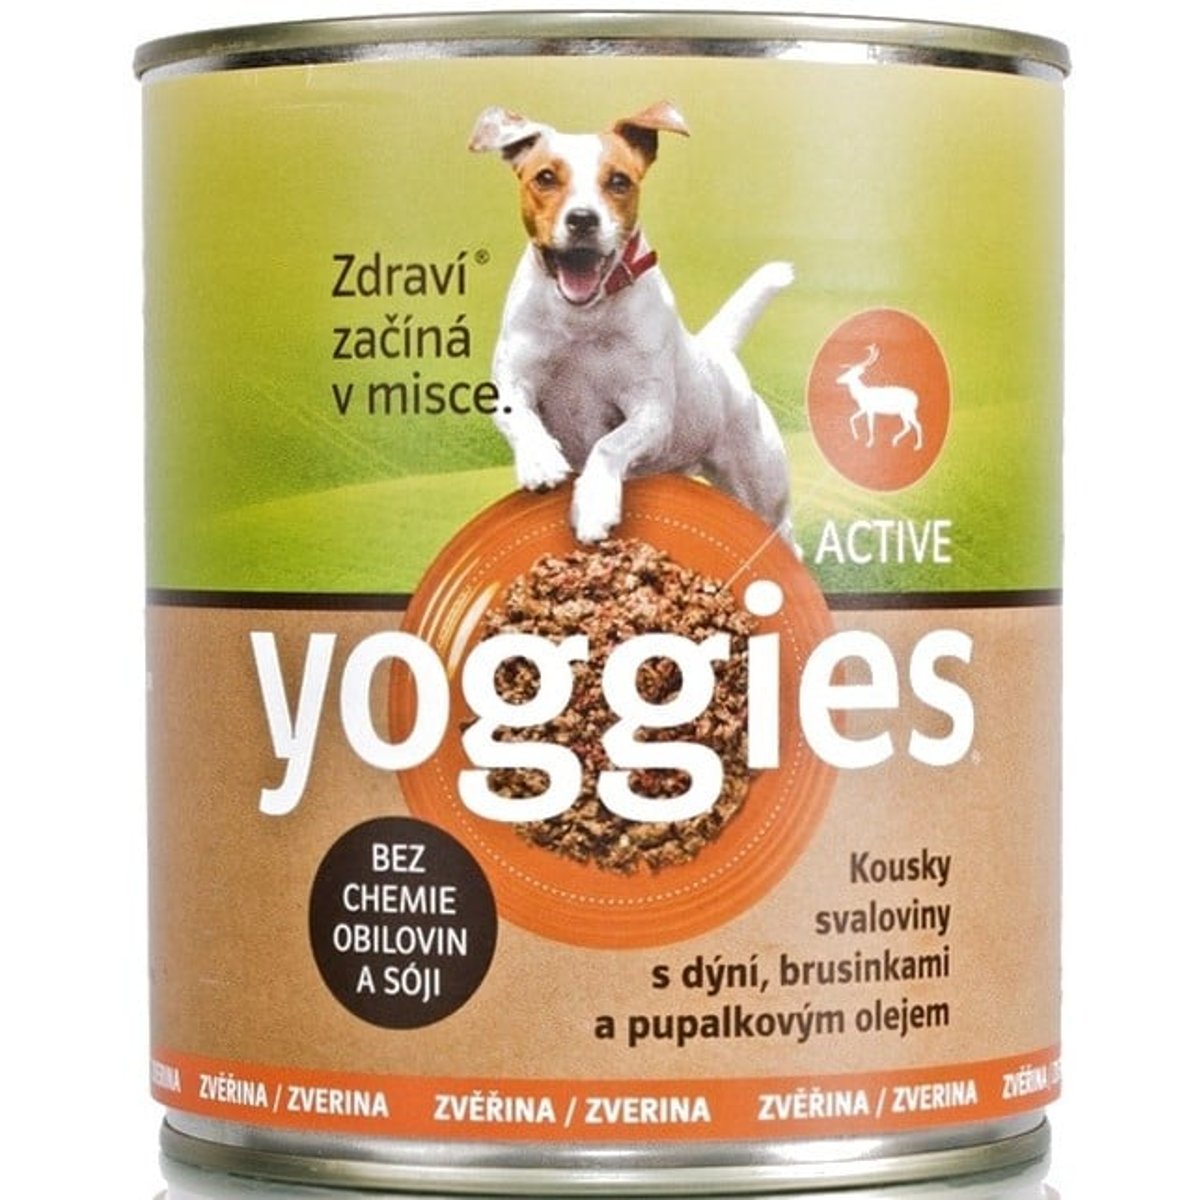 Yoggies Zvěřinová konzerva pro psy s dýní a pupálkovým olejem